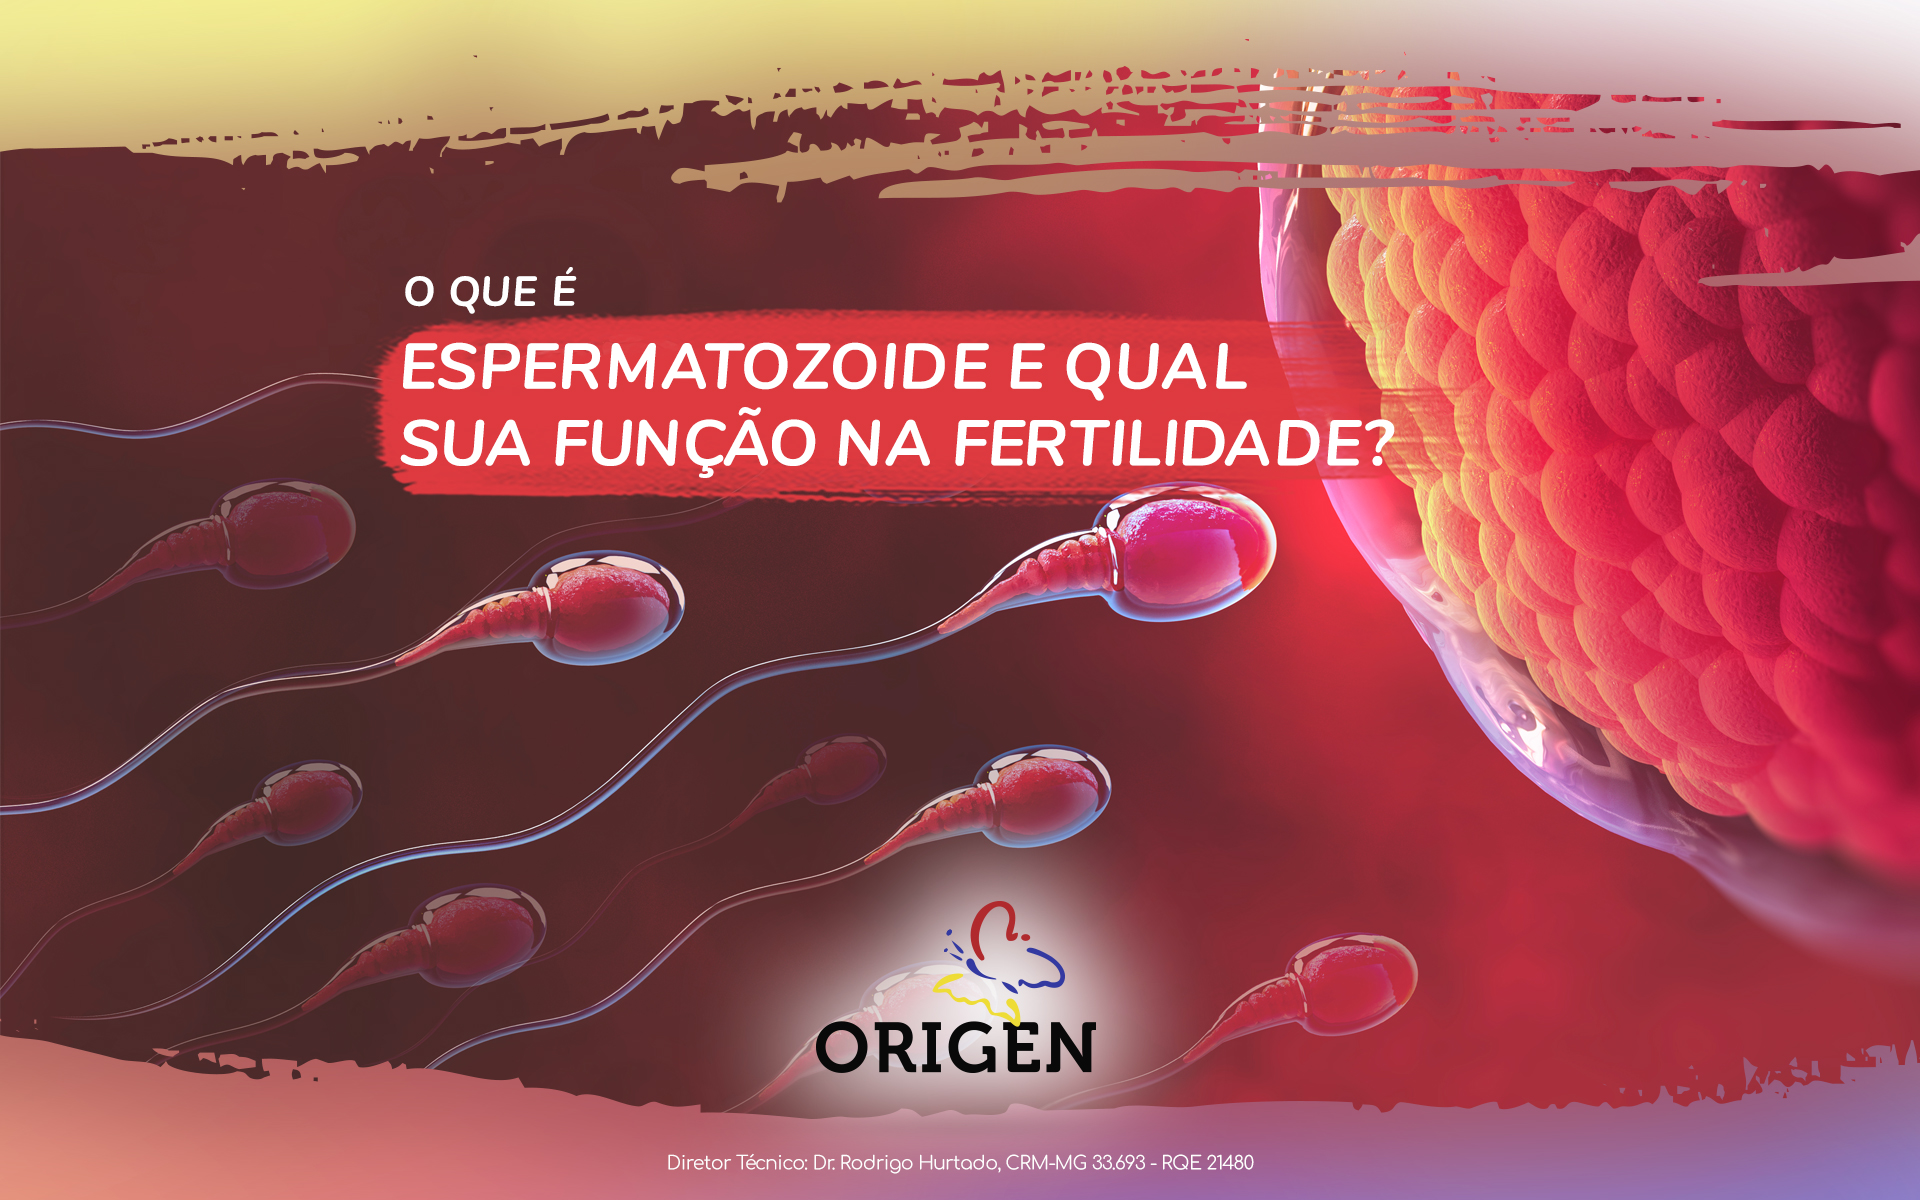 O que é espermatozoide e qual sua função na fertilidade?